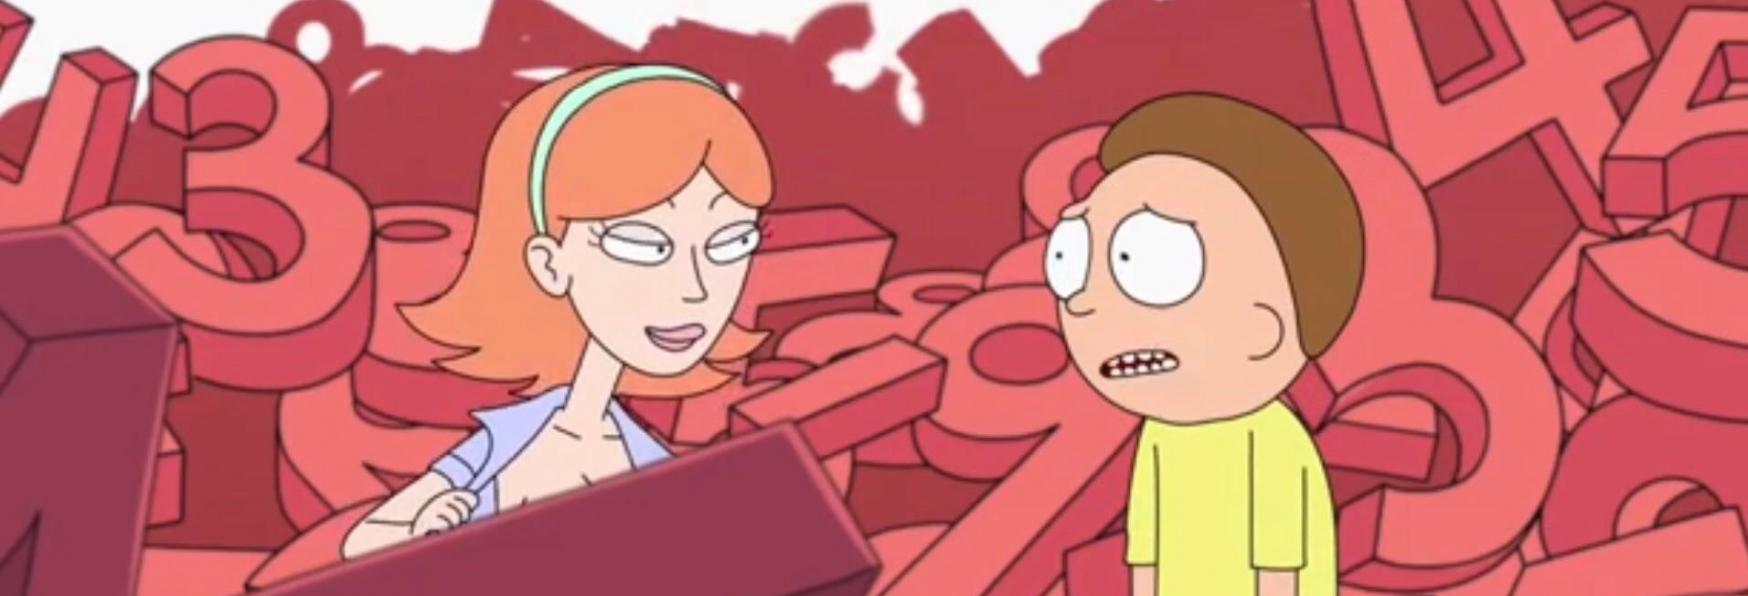 Rick and Morty 5: la nuova Stagione potrebbe portare Jessica nelle avventure dei Protagonisti